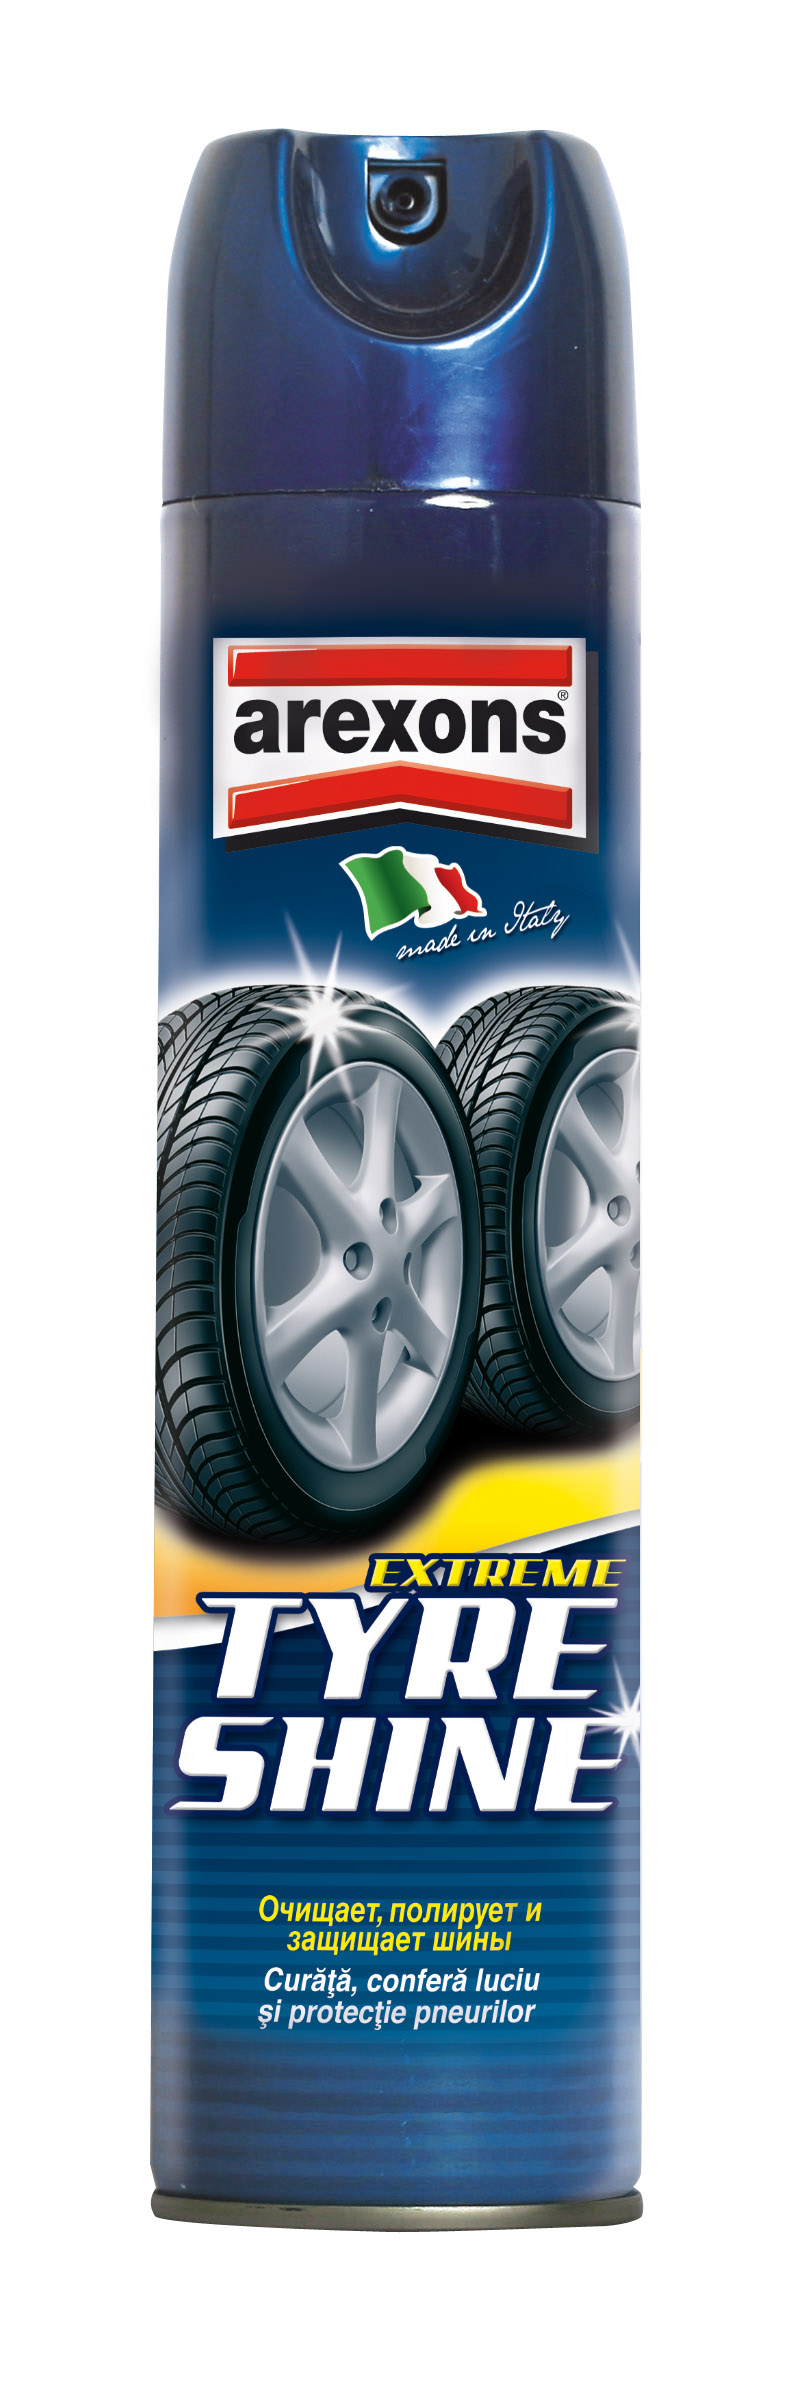 фото Очиститель и полироль шин (аэрозоль)arexons extreme tyre shine 400 мл. 35020/7164